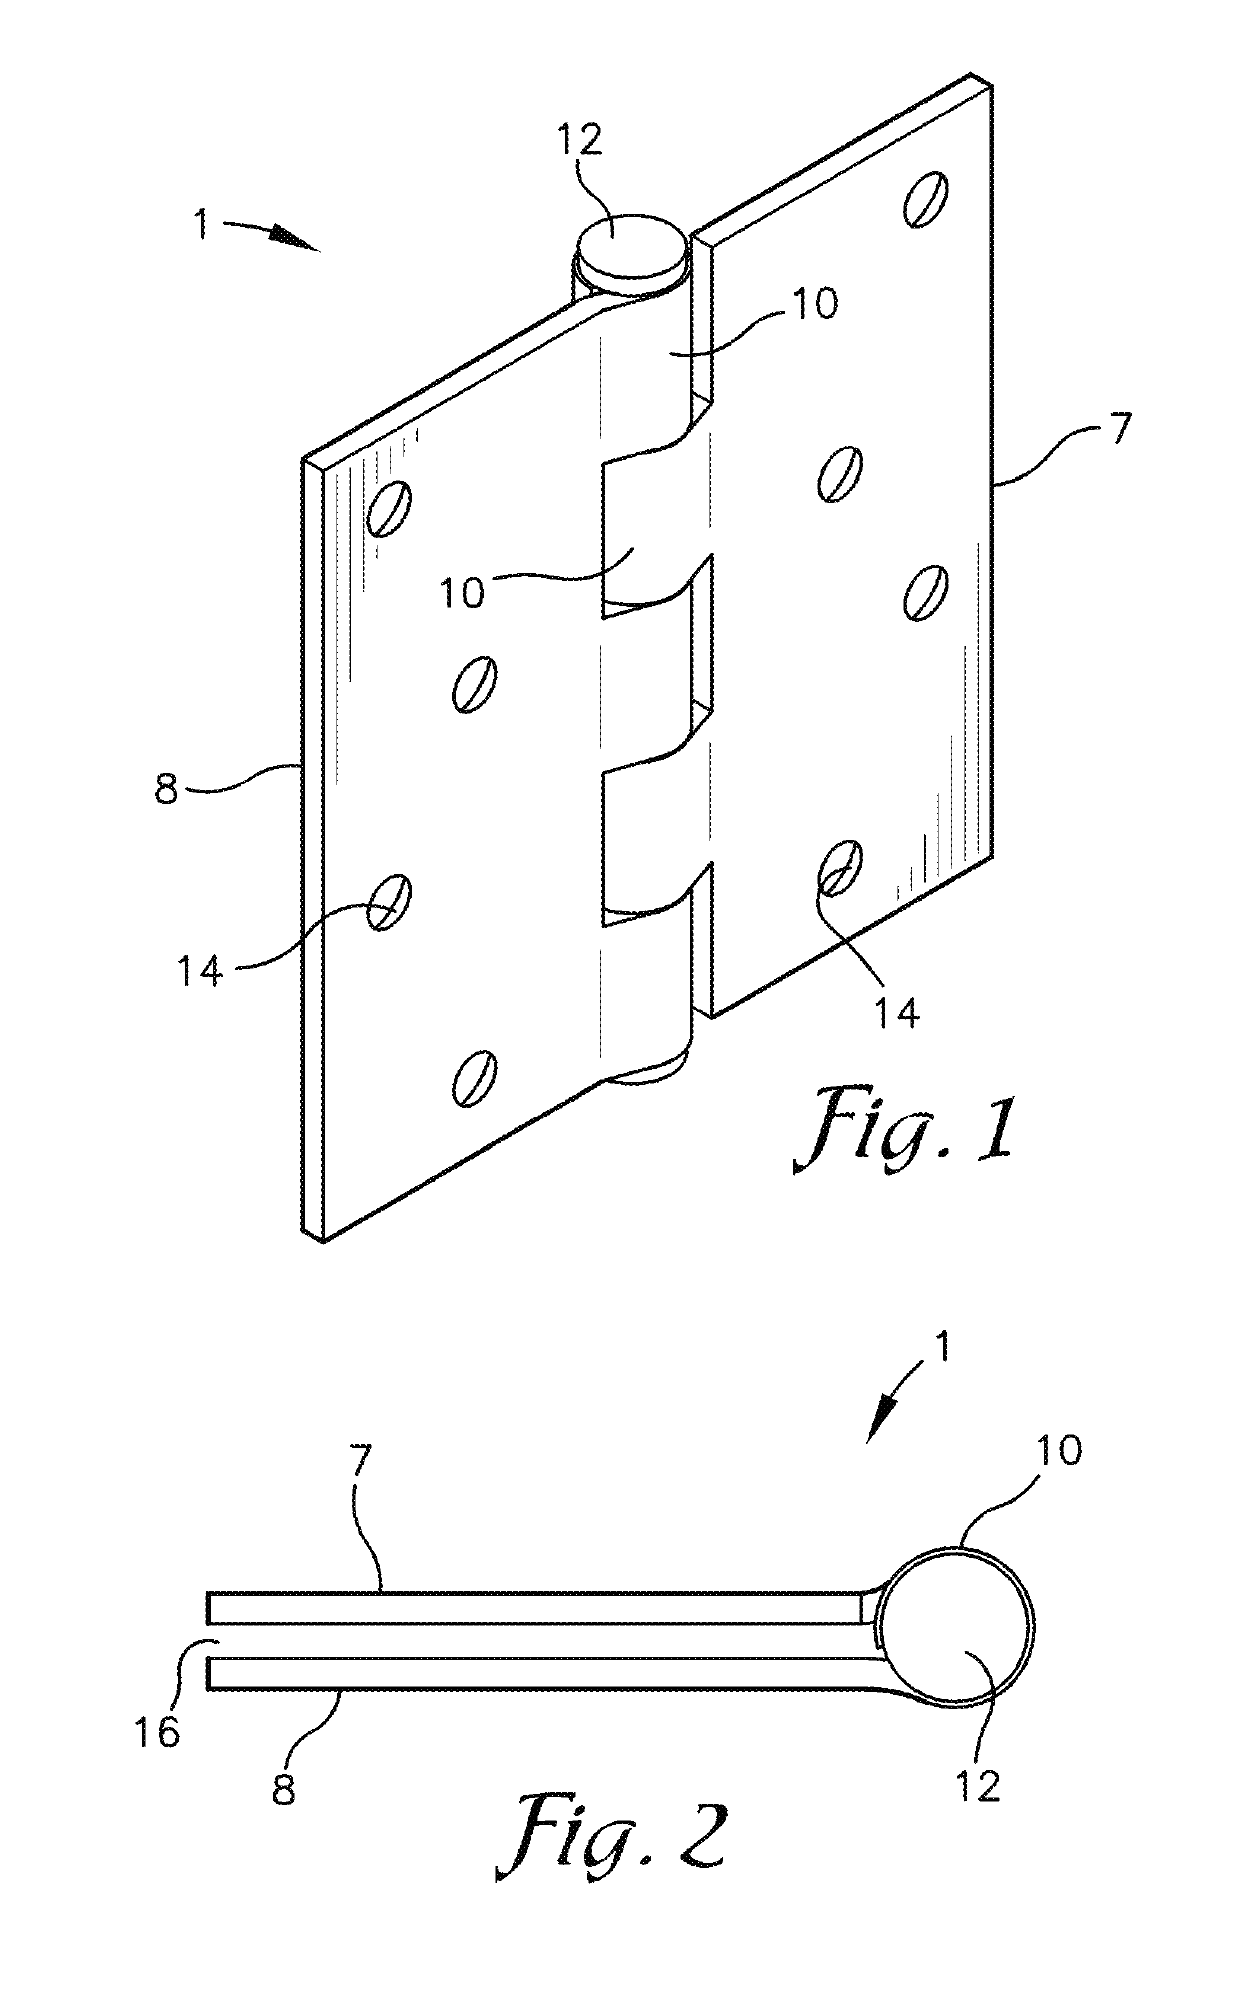 Door hinges and method for rehanging a door to realign the door in relation to a door jamb